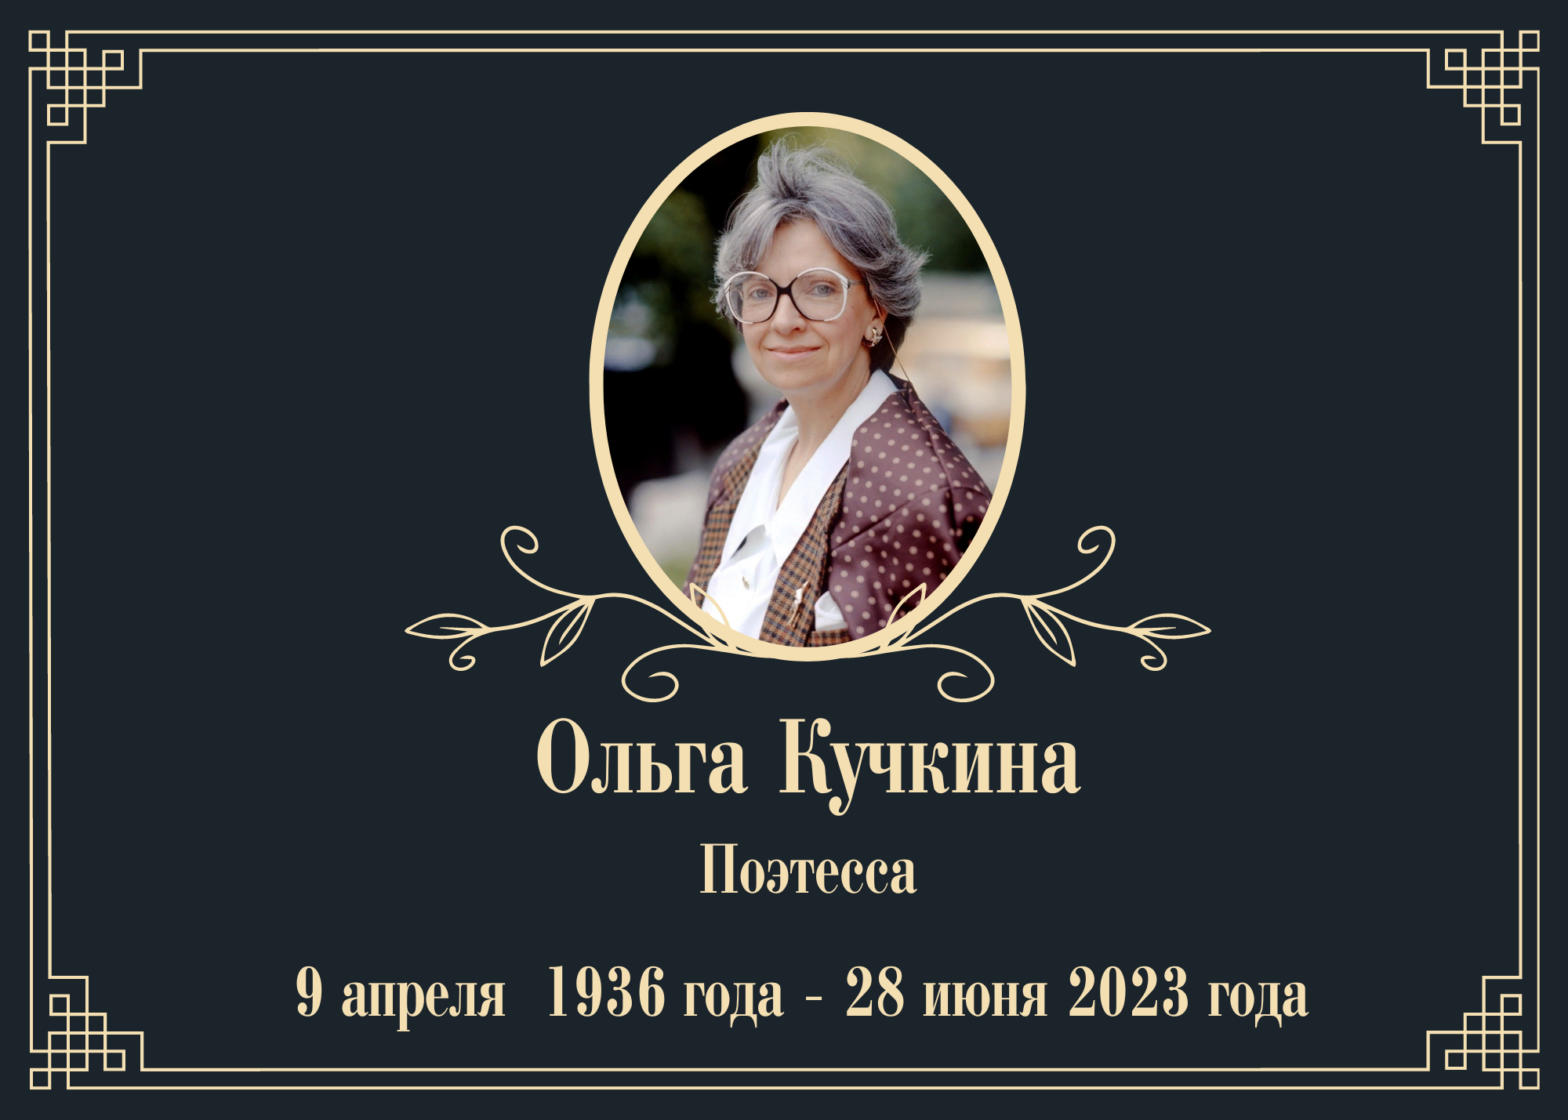 Умерла поэтесса Ольга Кучкина